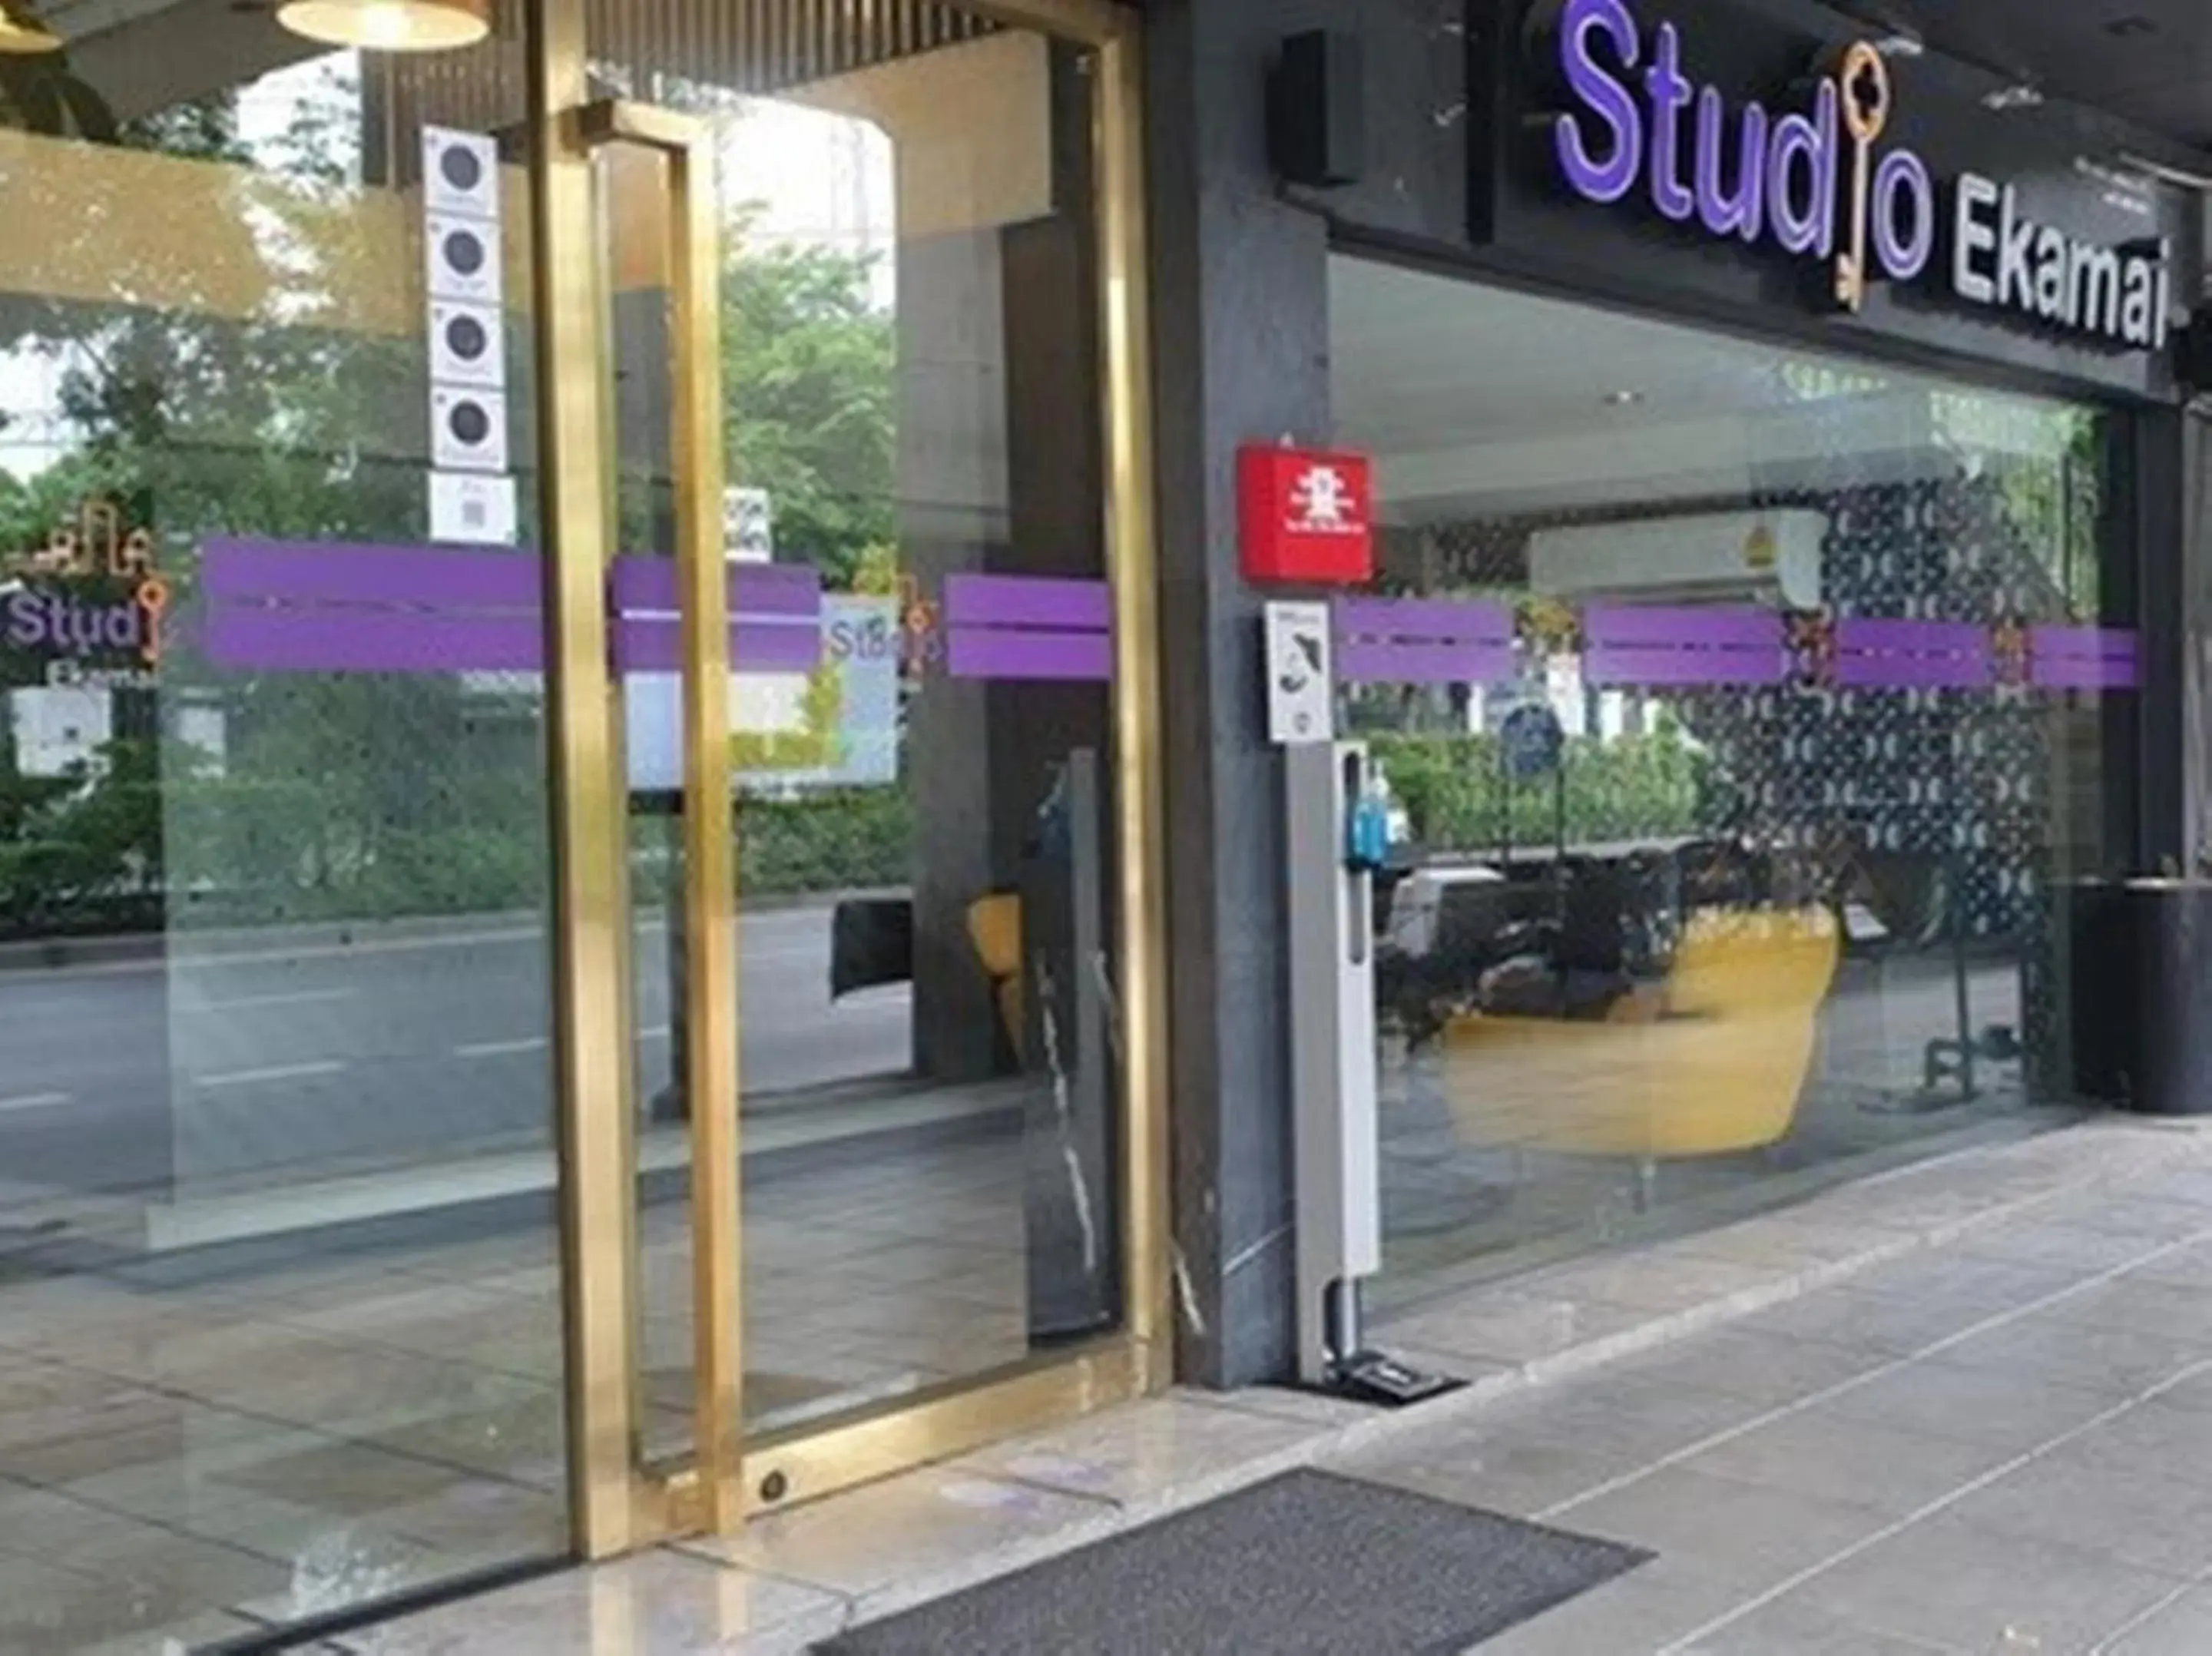 Facade/entrance in Studio Ekamai